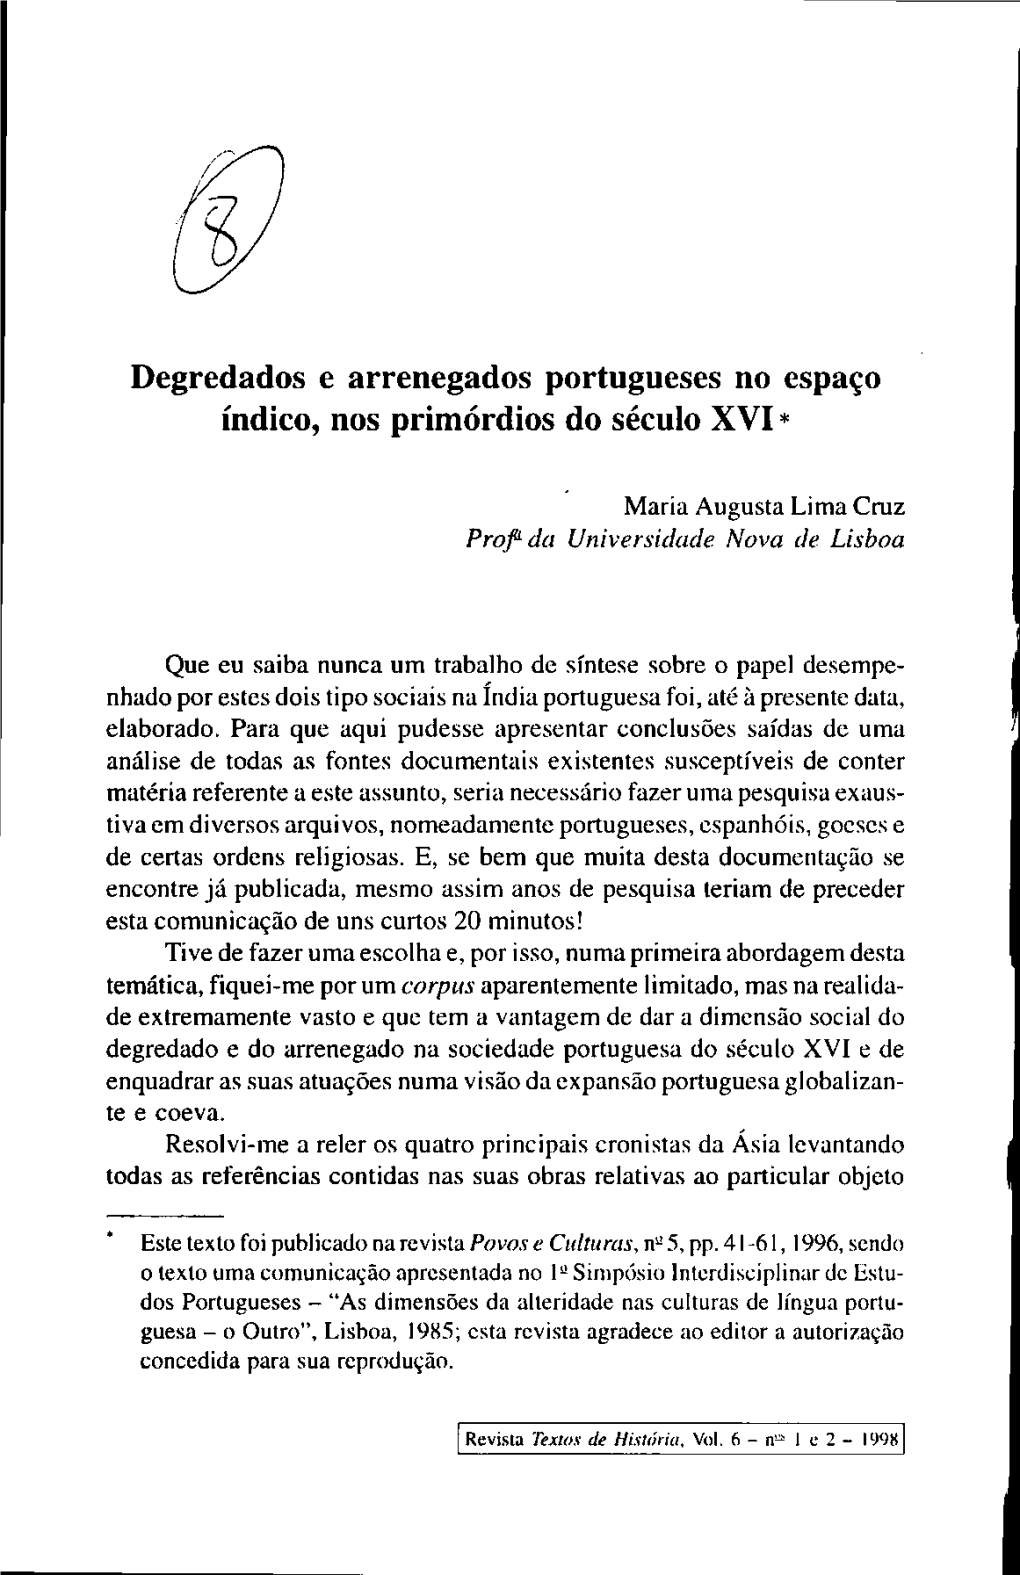 Degredados E Arrenegados Portugueses No Espaço Índico, Nos Primórdios Do Século XVI *